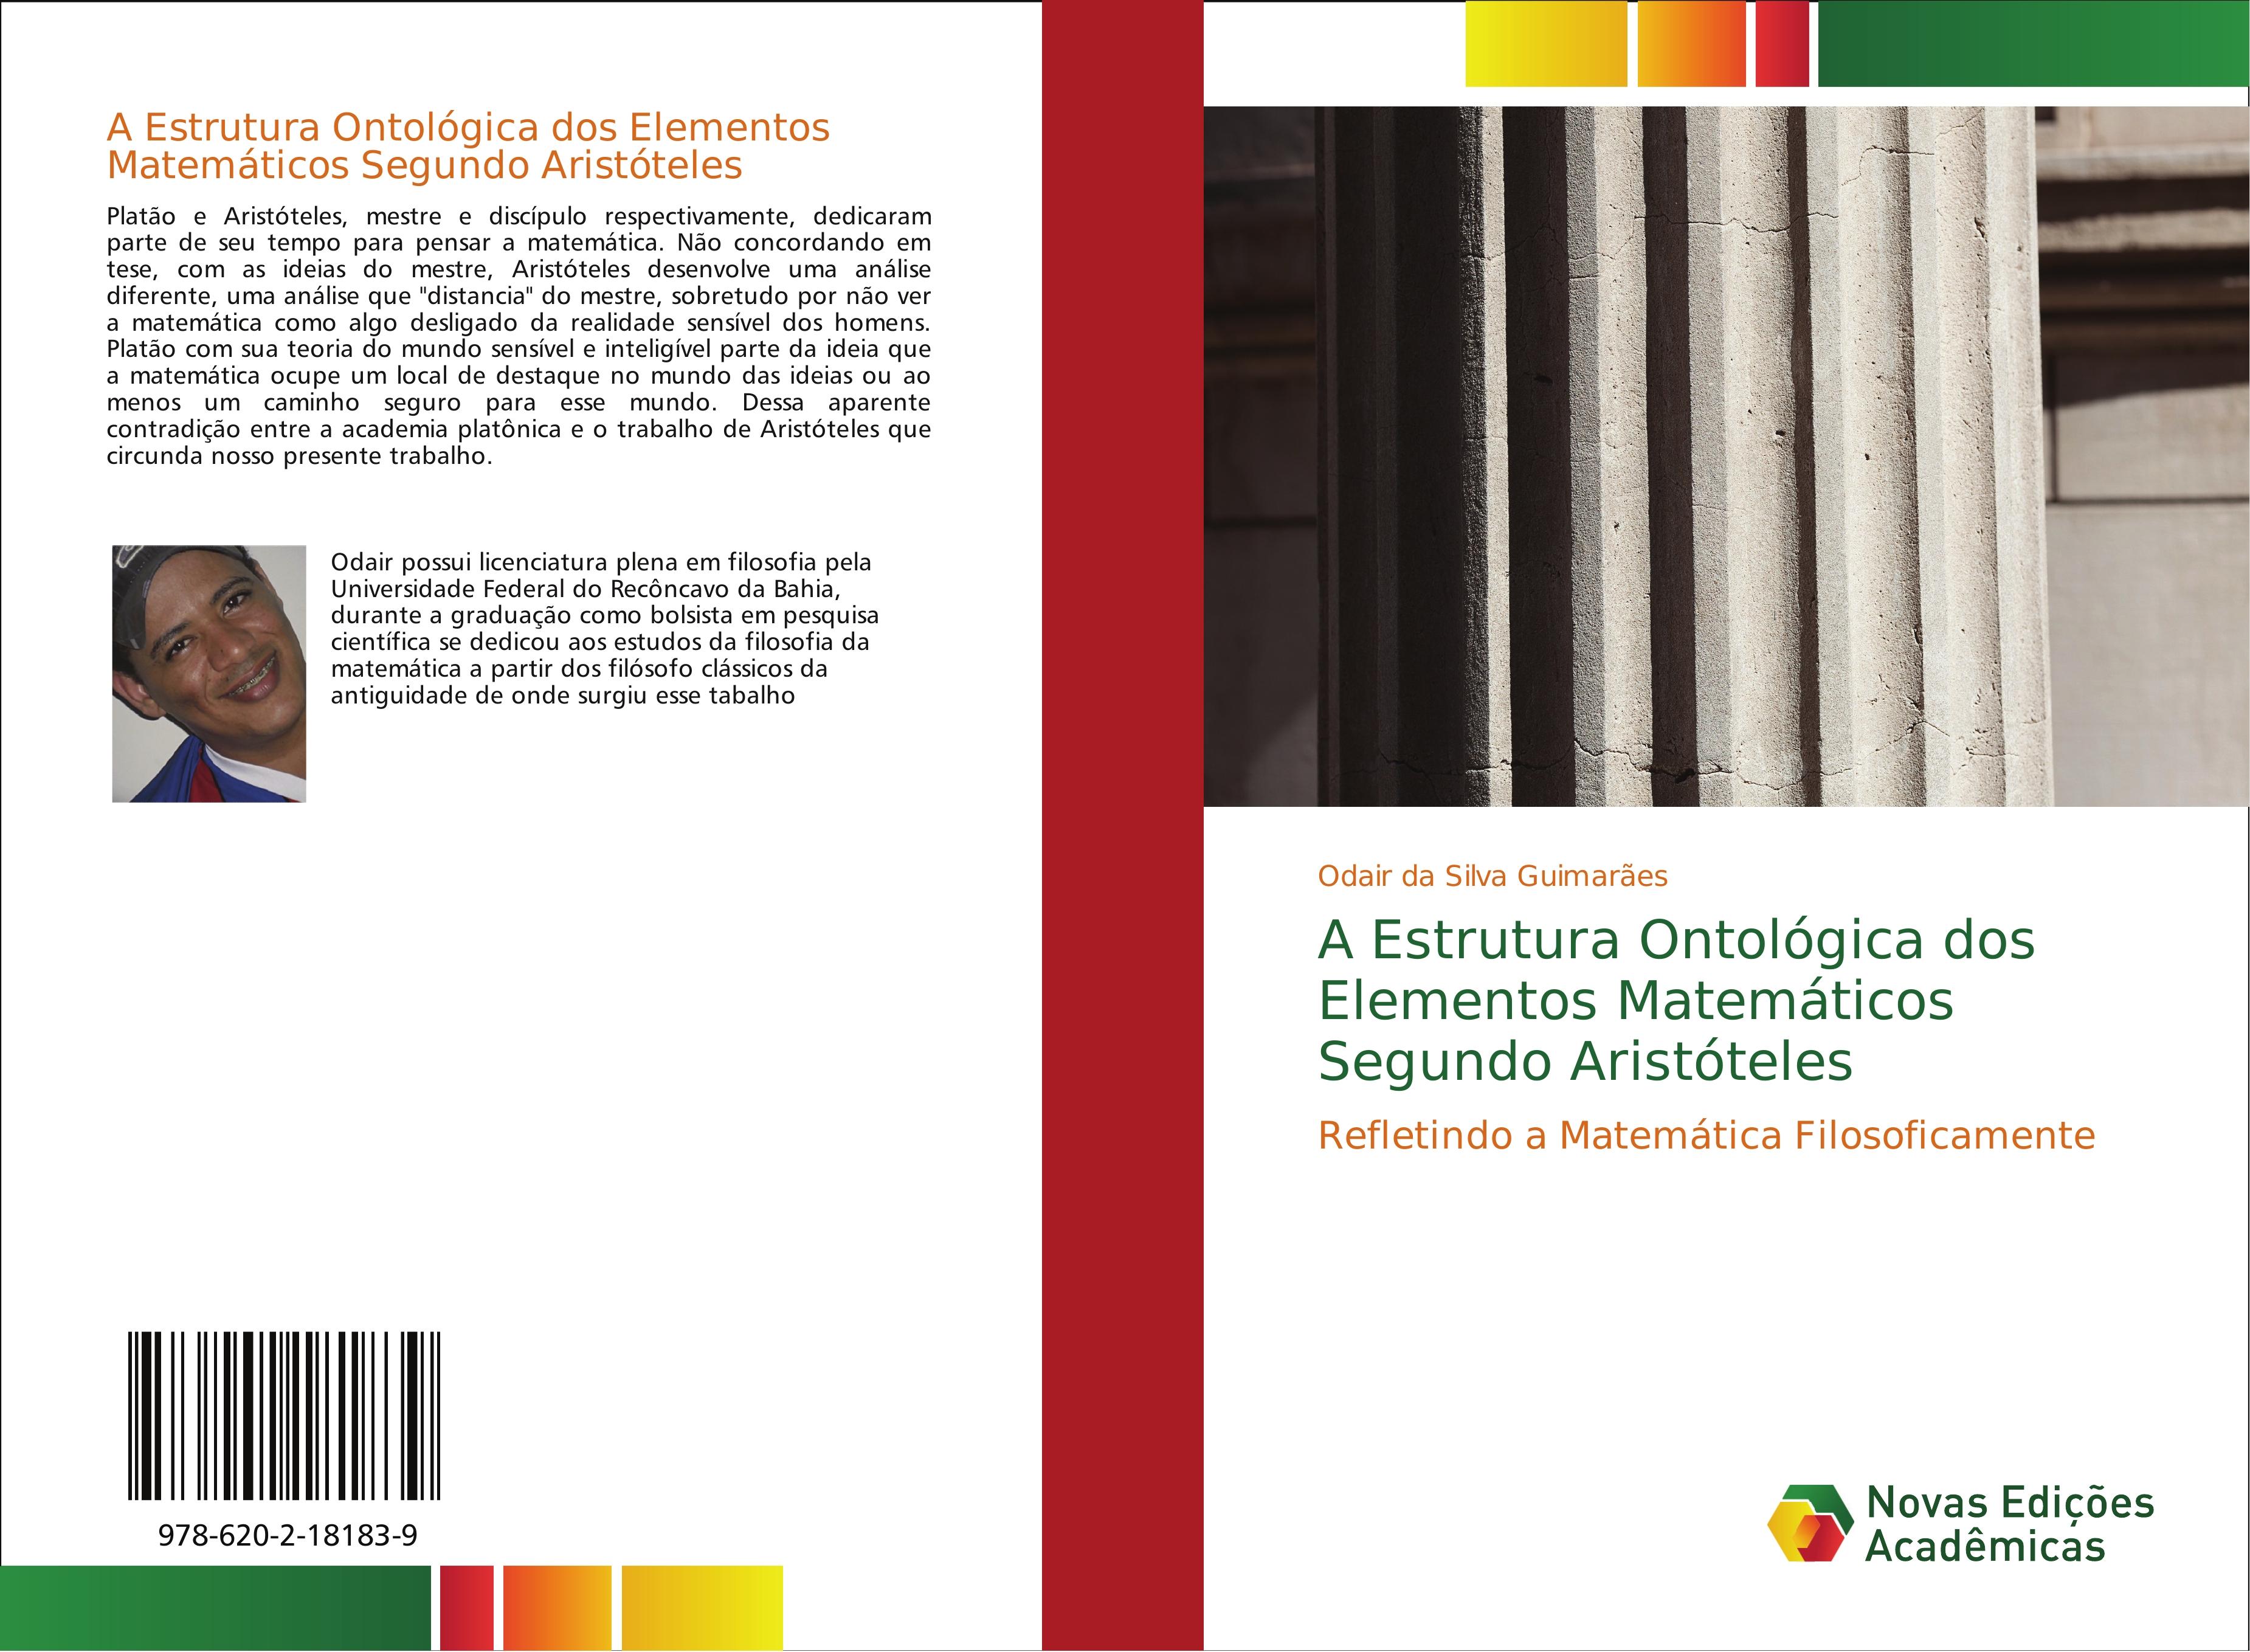 A Estrutura Ontológica dos Elementos Matemáticos Segundo Aristóteles - Odair da Silva Guimarães